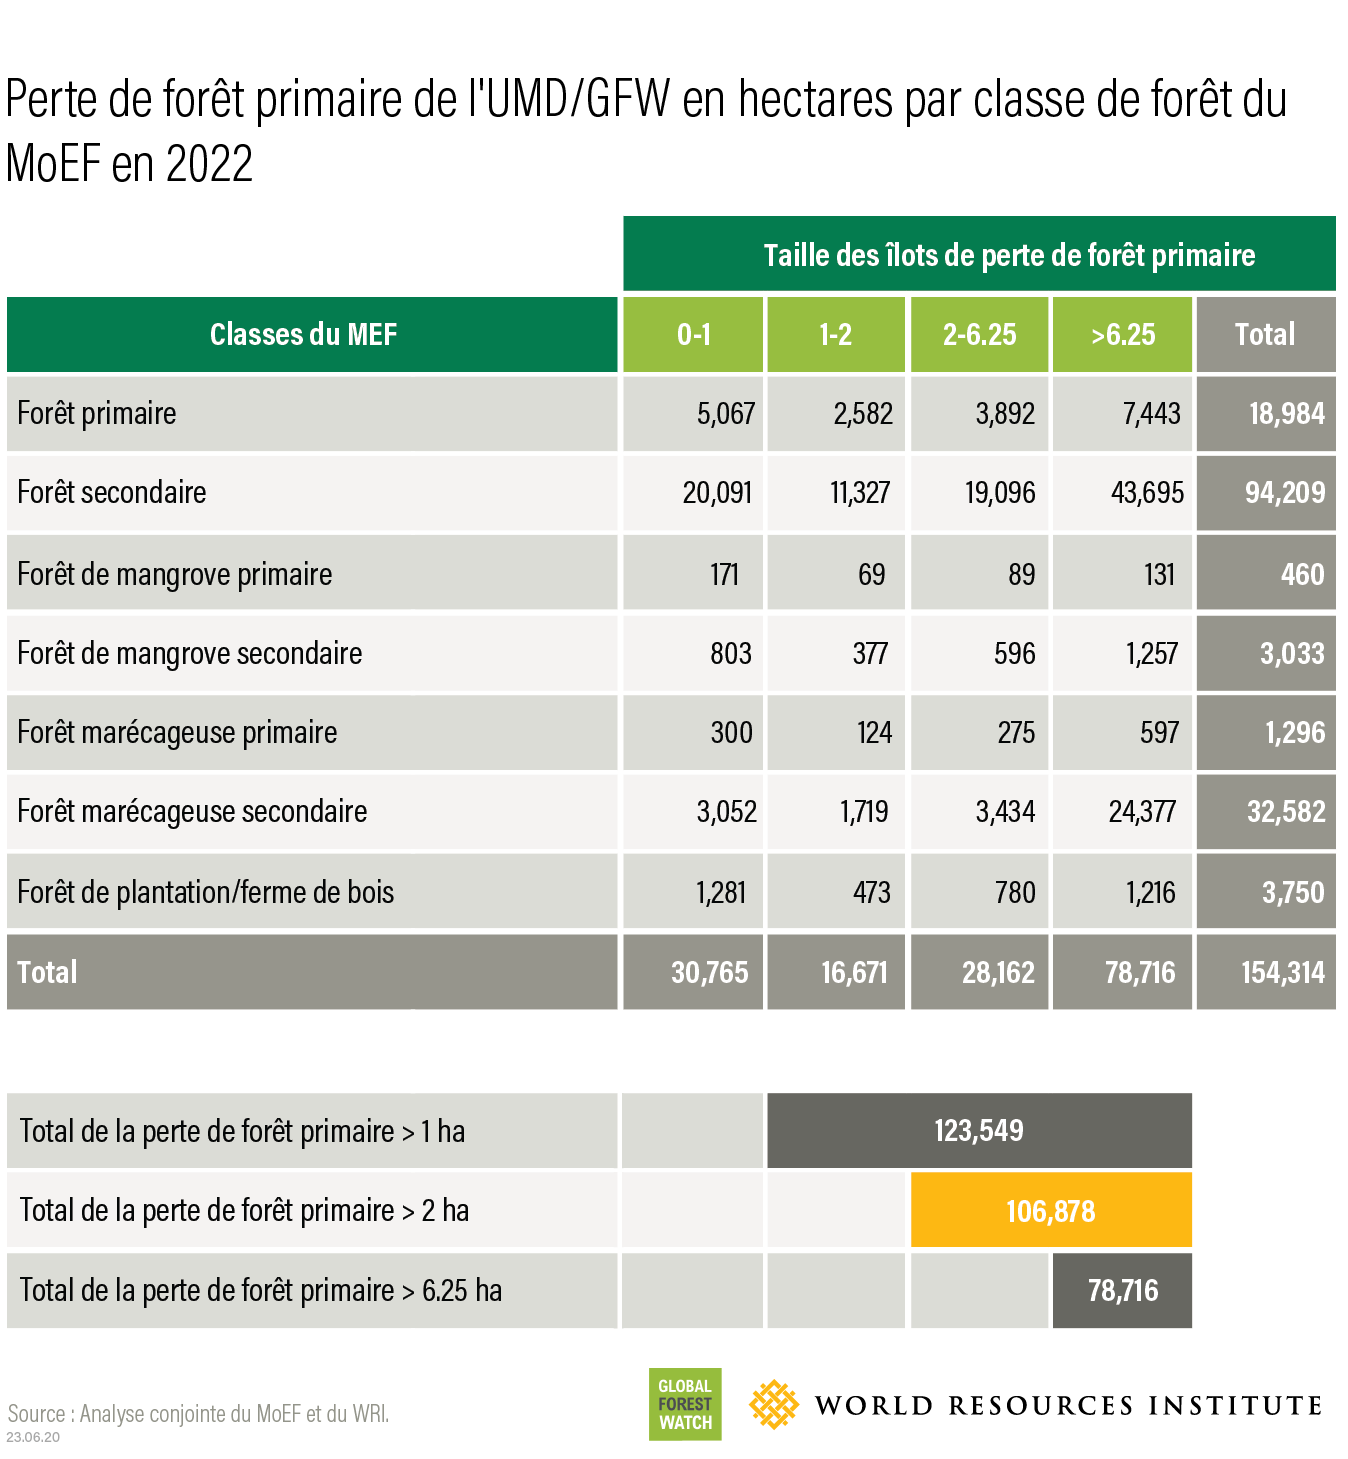 Perte de forêt primaire de l'UMD/GFW en hectares par classe de forêt du MoEF en 2022